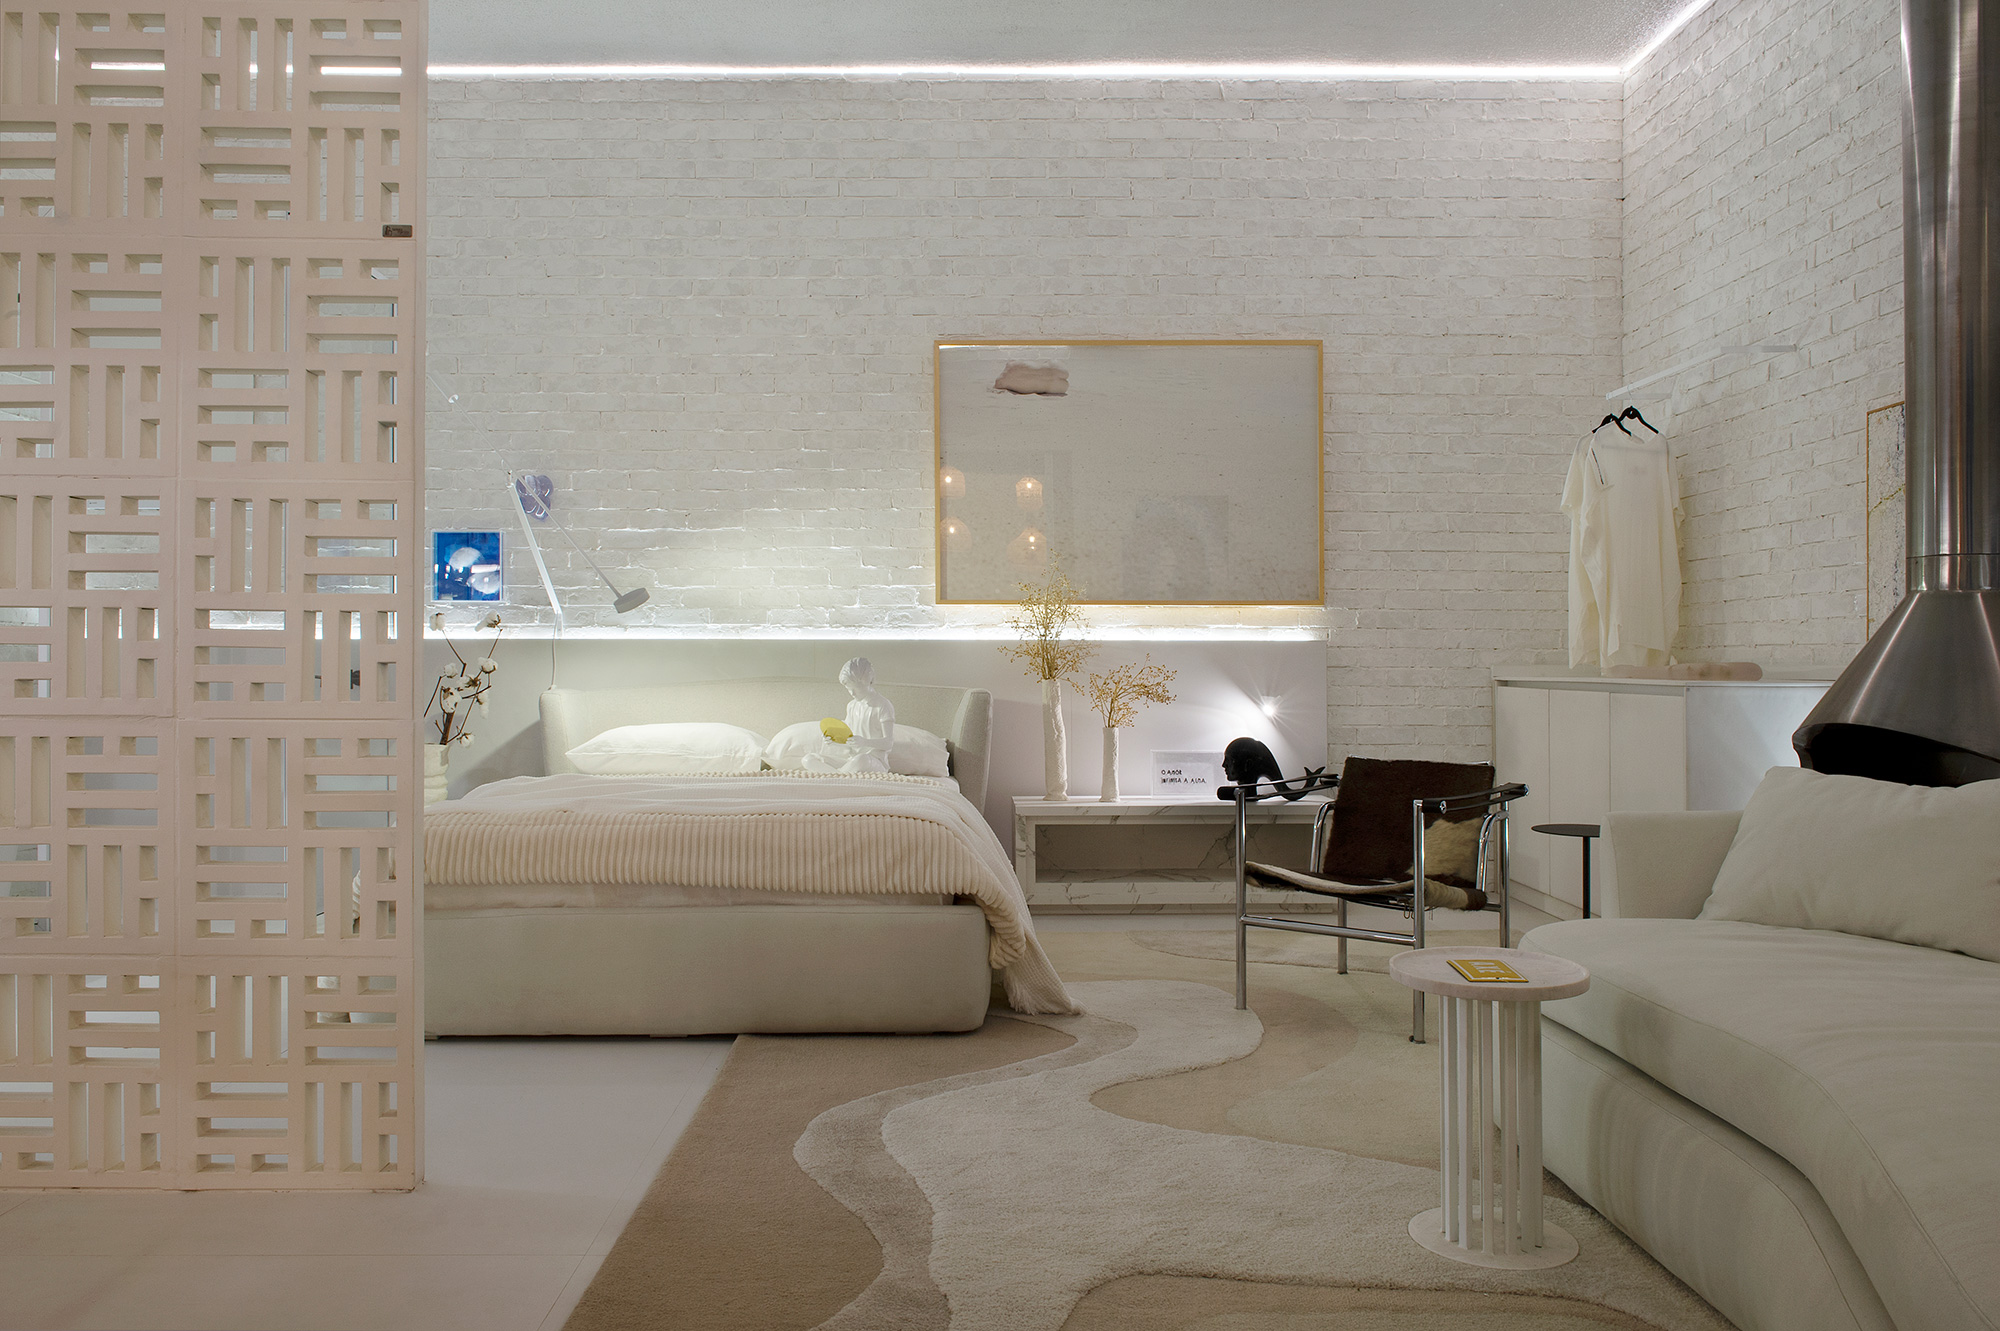 Seguindo a inspiração das casas brancas da cidade de Puglia, os móveis foram feitos com Dekton® Aura, padrão que homenageia os mármores Calacatta e Carrara.